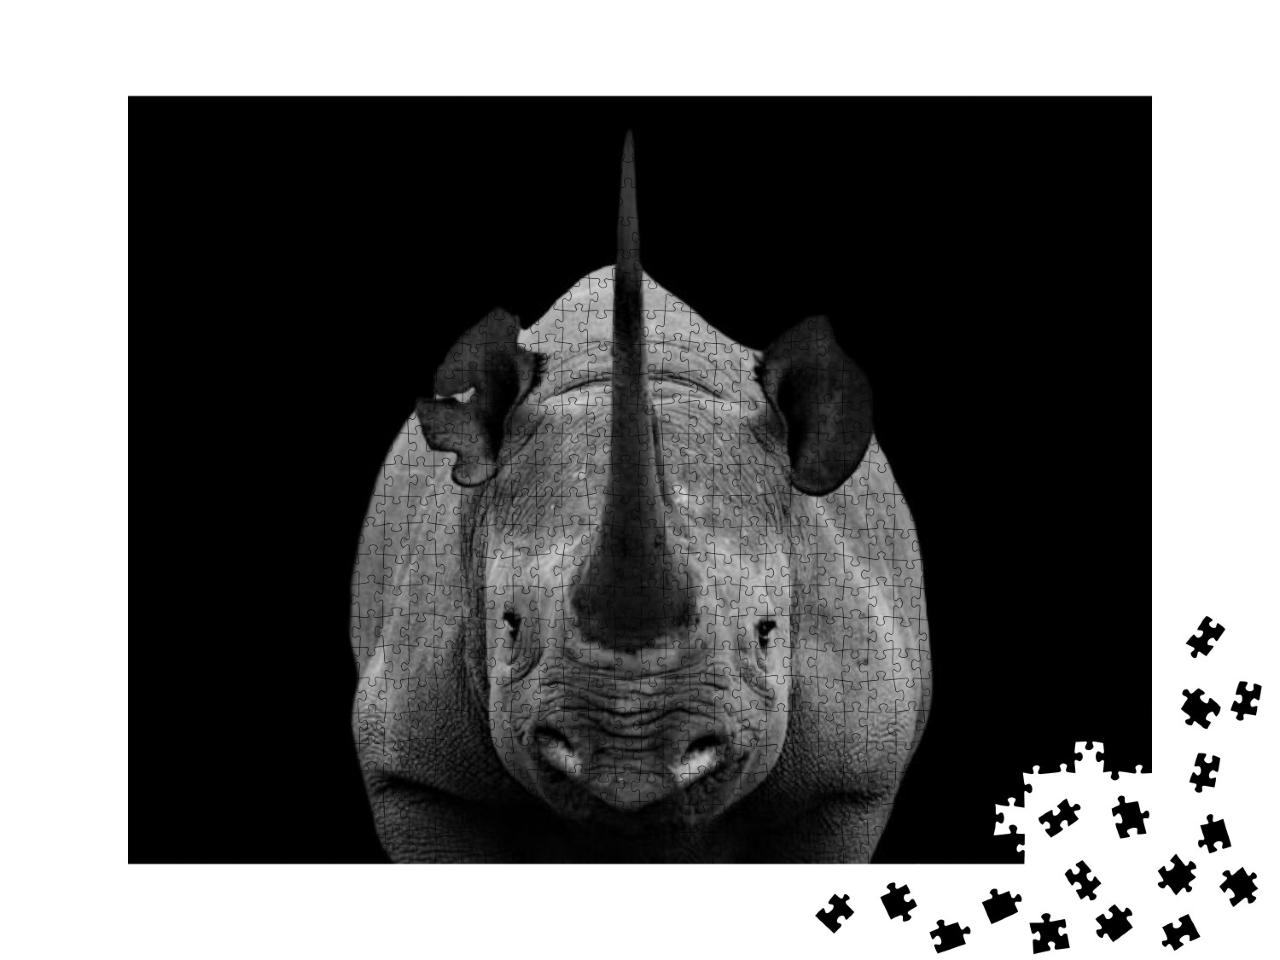 Puzzle 1000 Teile „Auge in Auge mit einem Nashorn “